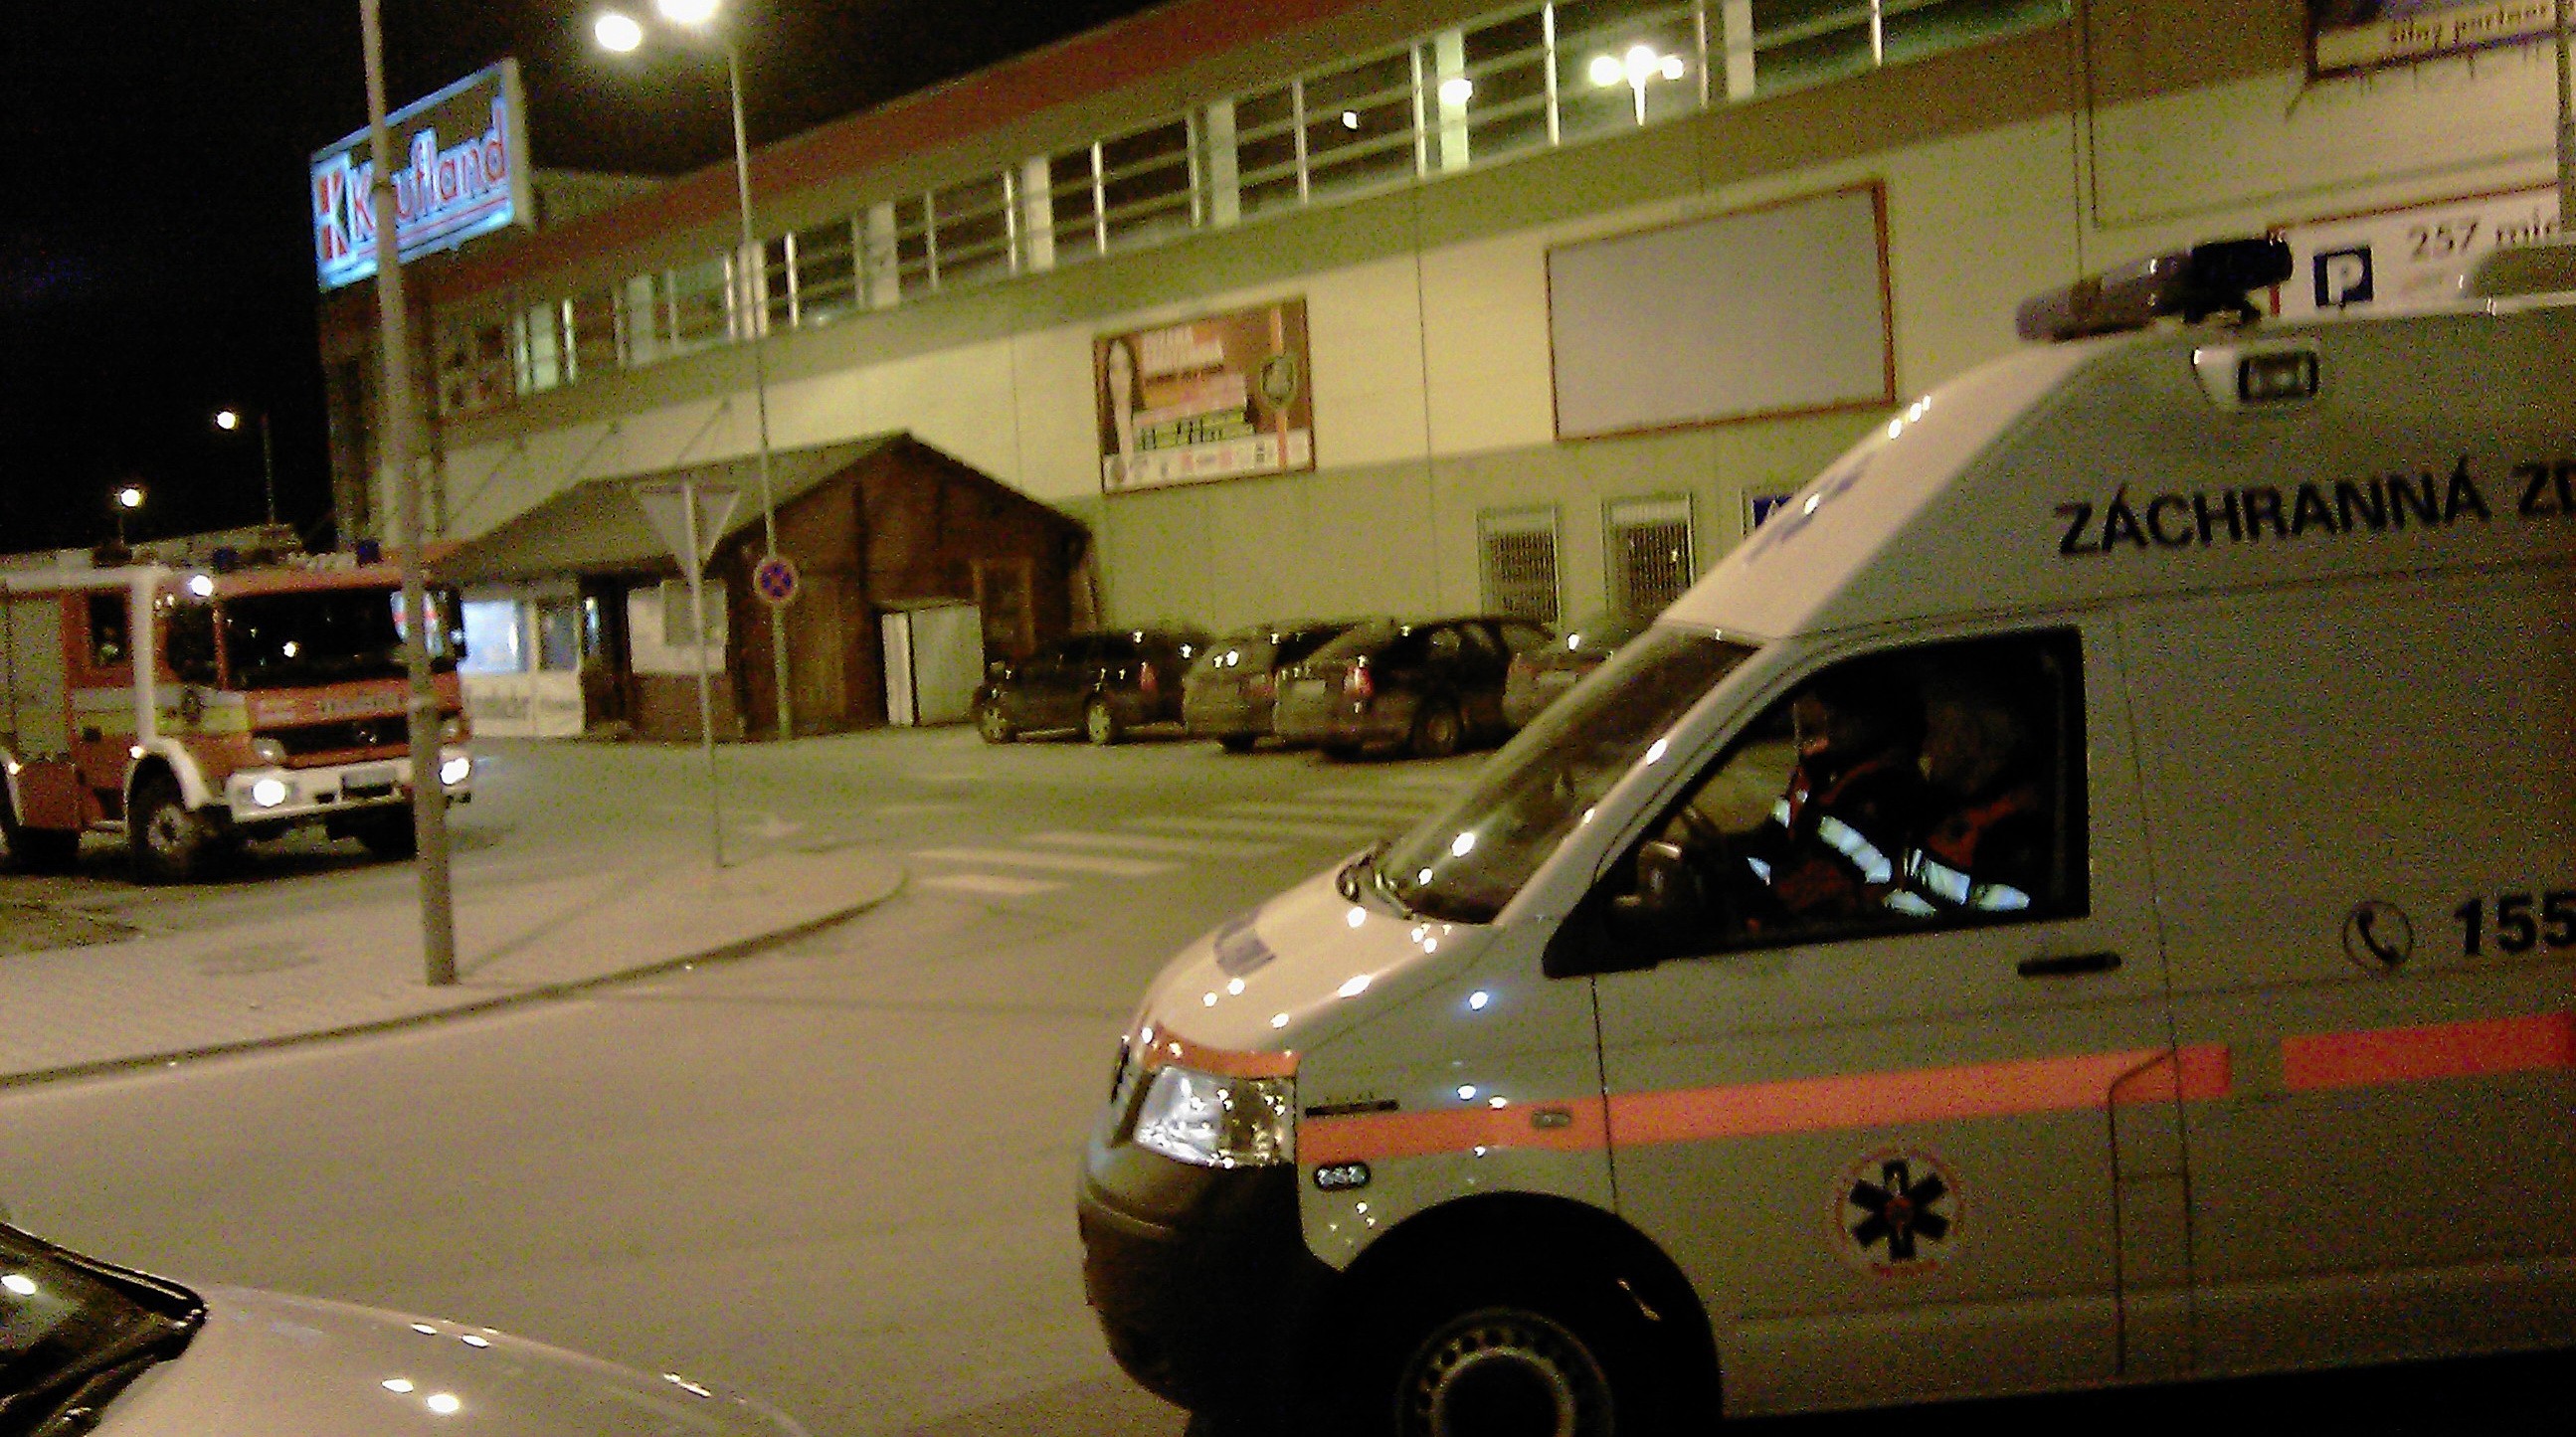 Záchranári v prípade potreby pred banskobystrickým Kauflandom. Anonym tam nahlásil na tiesňovú linku bombu